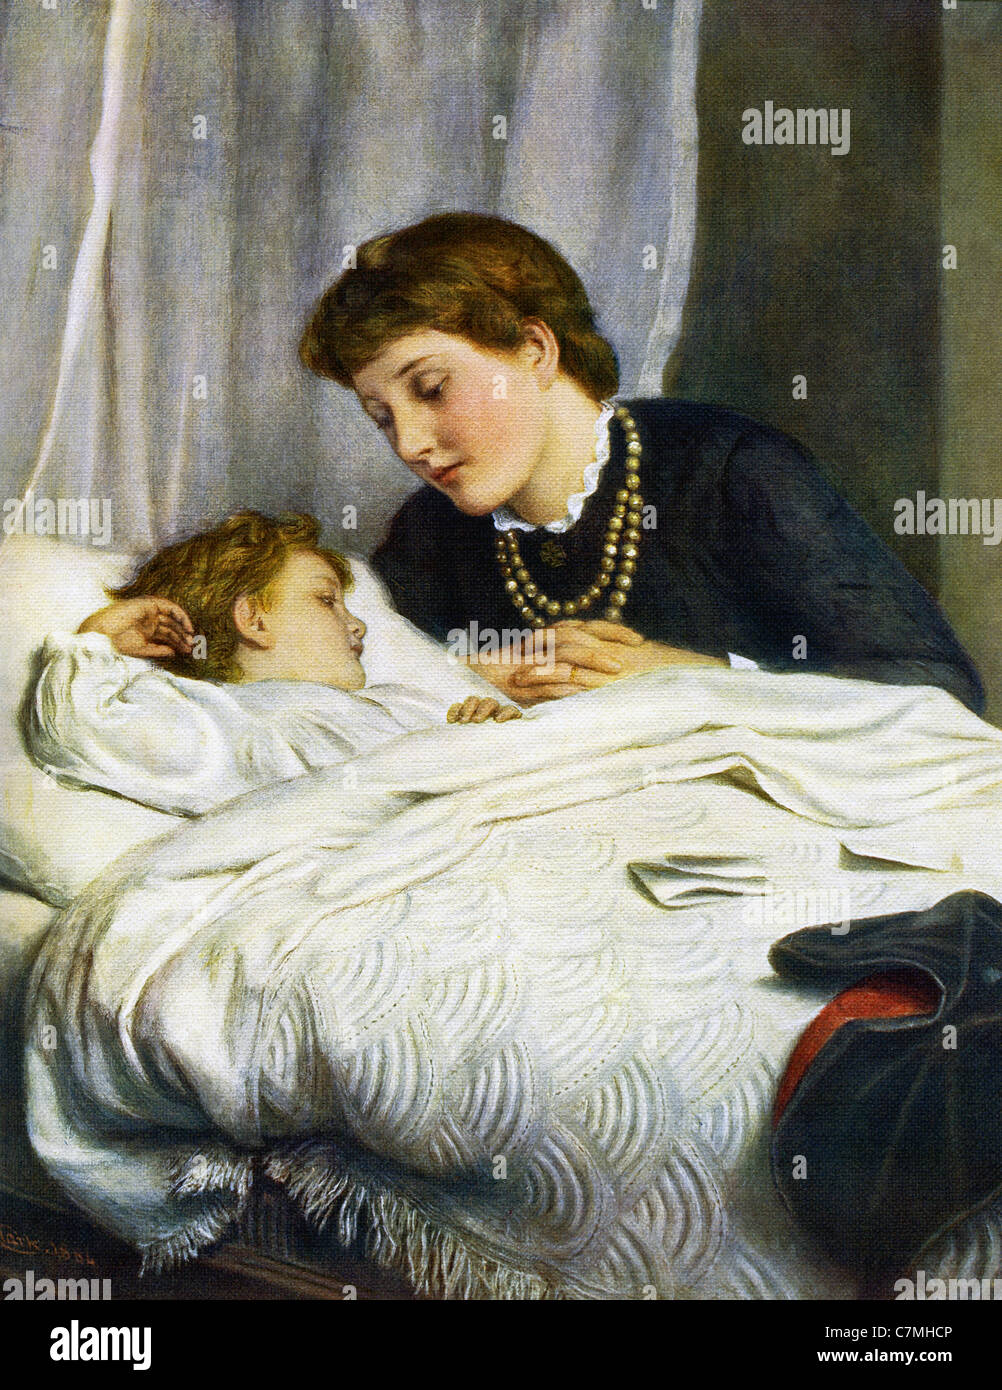 L'artiste britannique Joseph Clark (1836-1925) spécialisé dans les scènes nationales, comme celle intitulée "Une mère chérie.' Banque D'Images